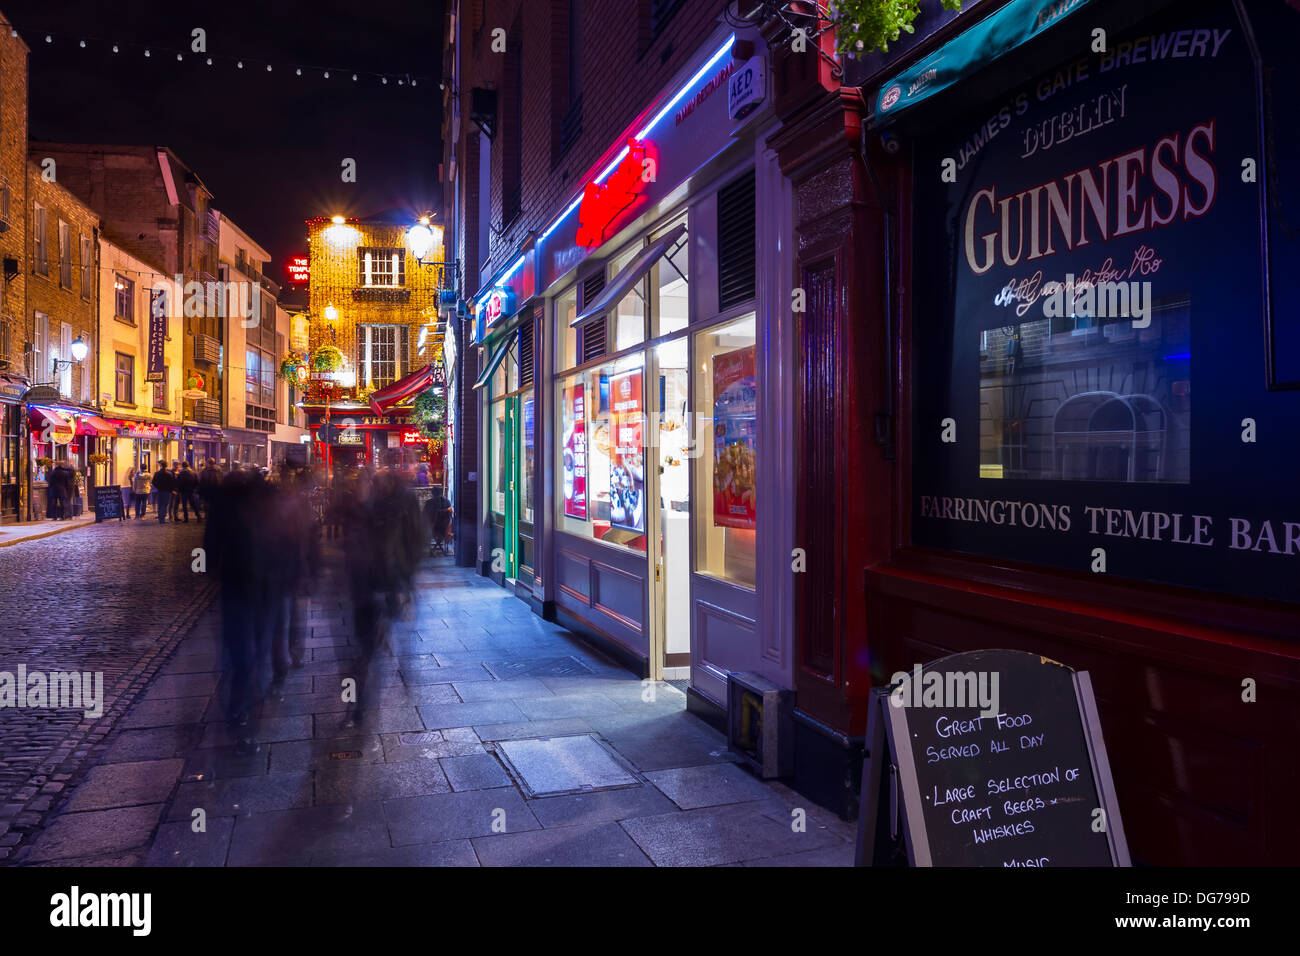 Dublin, Irland - 14. Oktober 2013: Eine typische Nacht auf der Temple Bar, Straße, ist weltweit bekannt als Dublins kulturelles Gentechnik Stockfoto